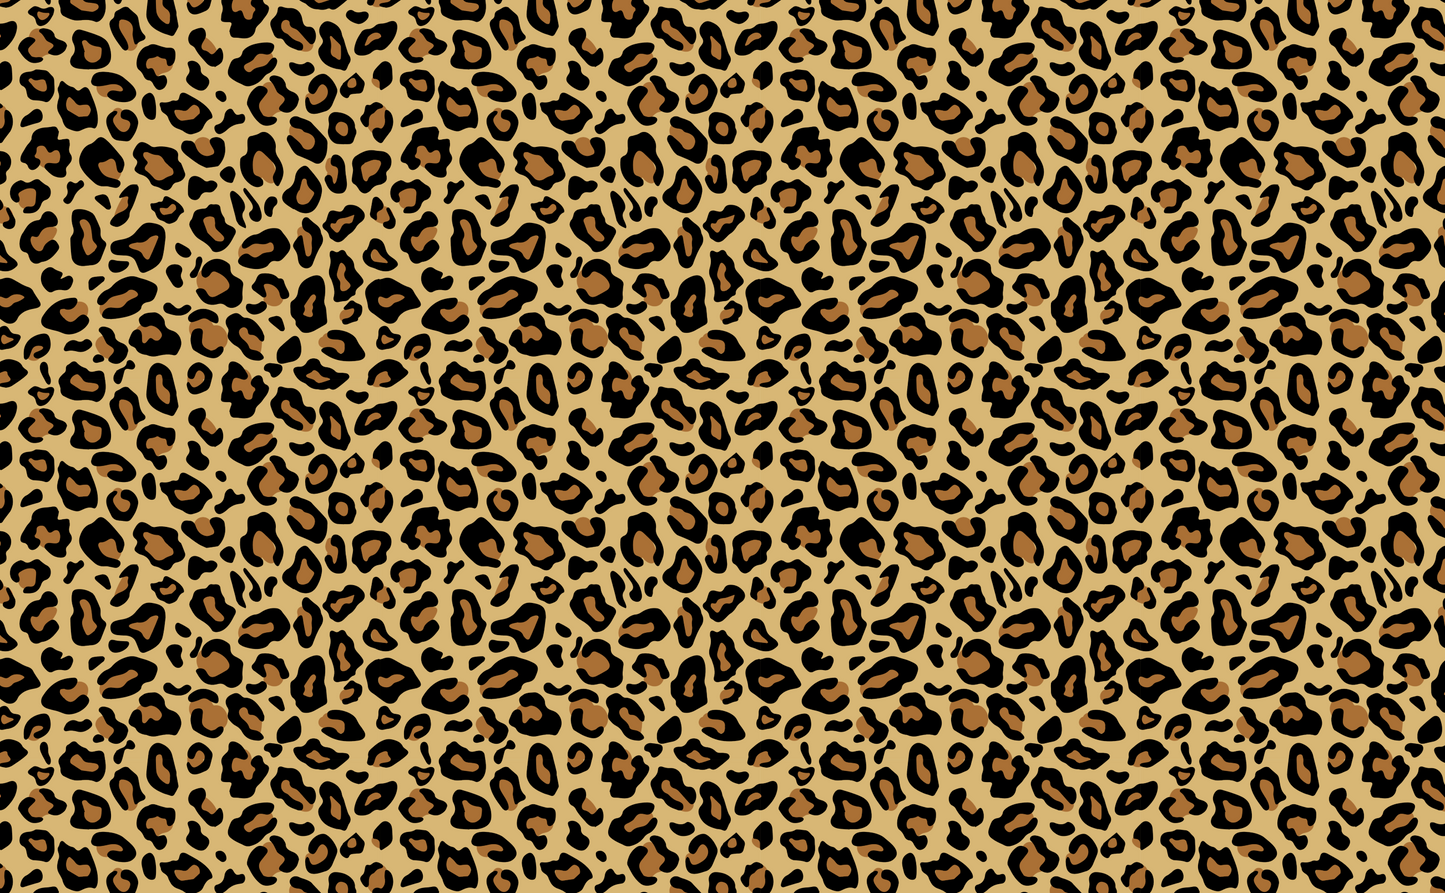 FANCY AF WOOD Leopard Print